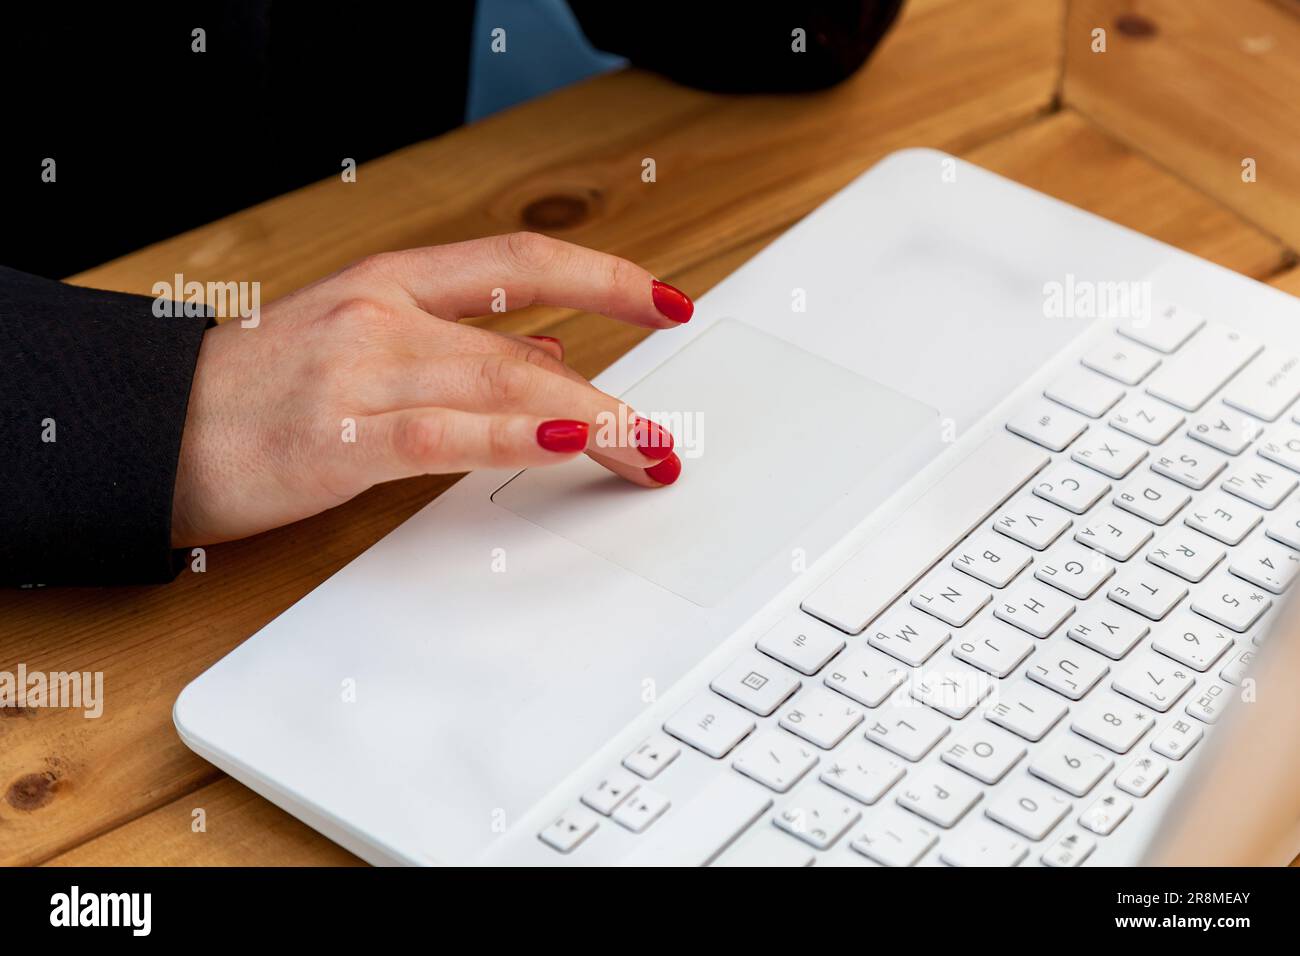 Weibliche Hände mit roter Maniküre auf dem Hintergrund eines weißen Laptops. Das Mädchen im Café arbeitet an einem Laptop. Stockfoto